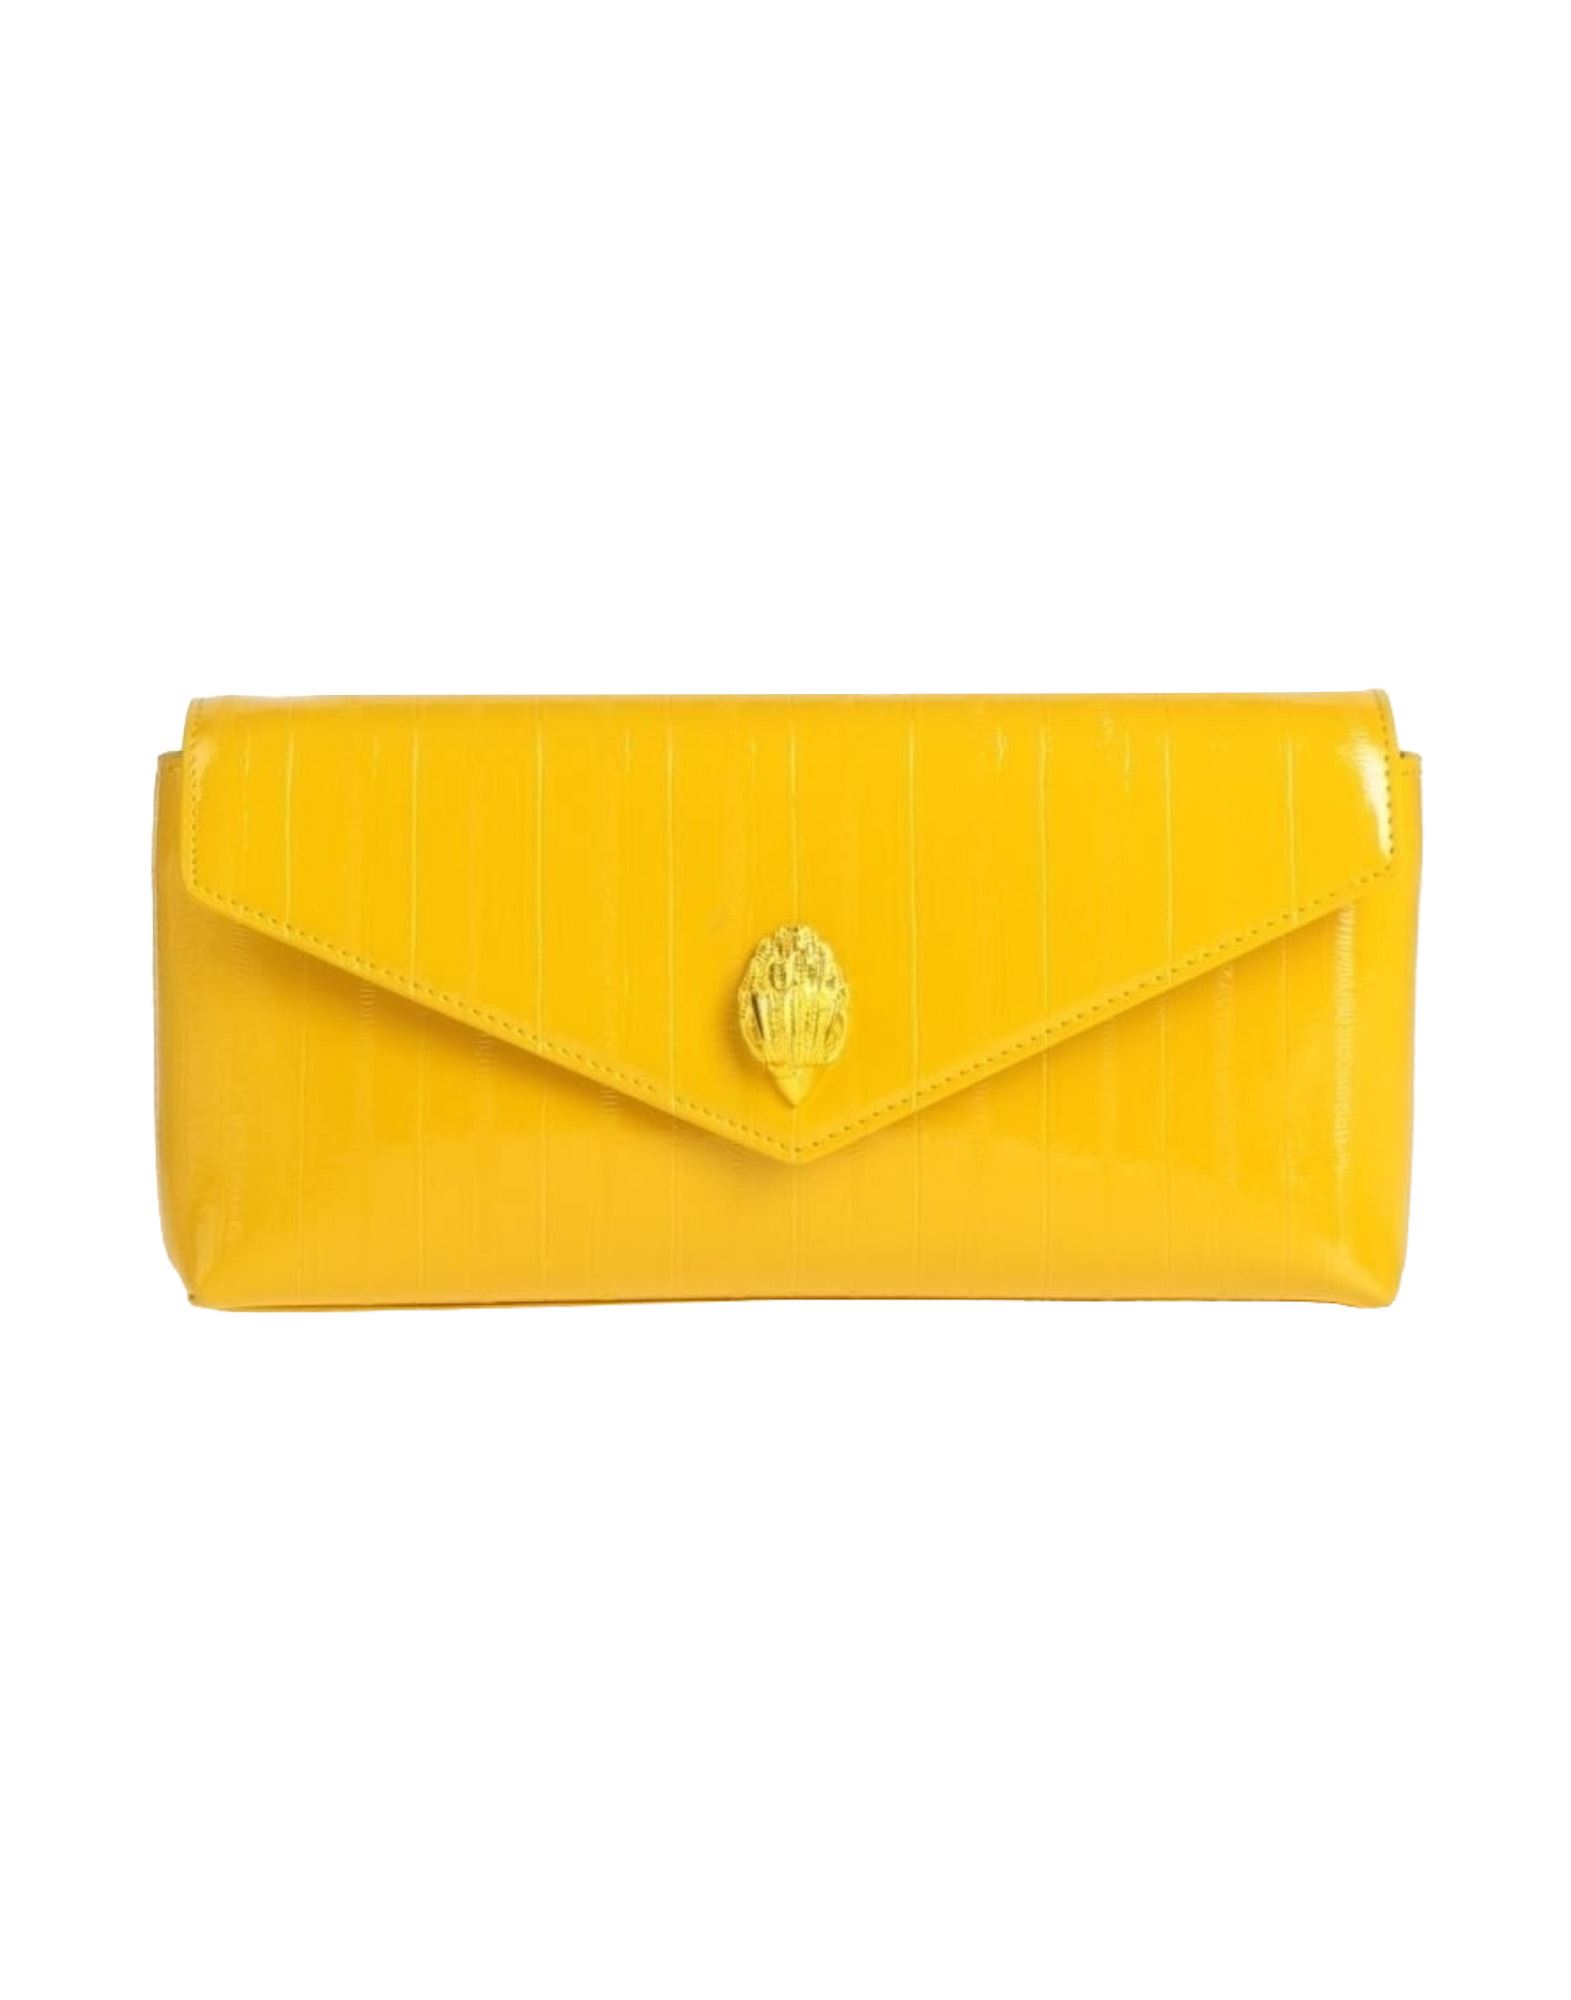 KURT GEIGER Handtaschen Damen Gelb von KURT GEIGER